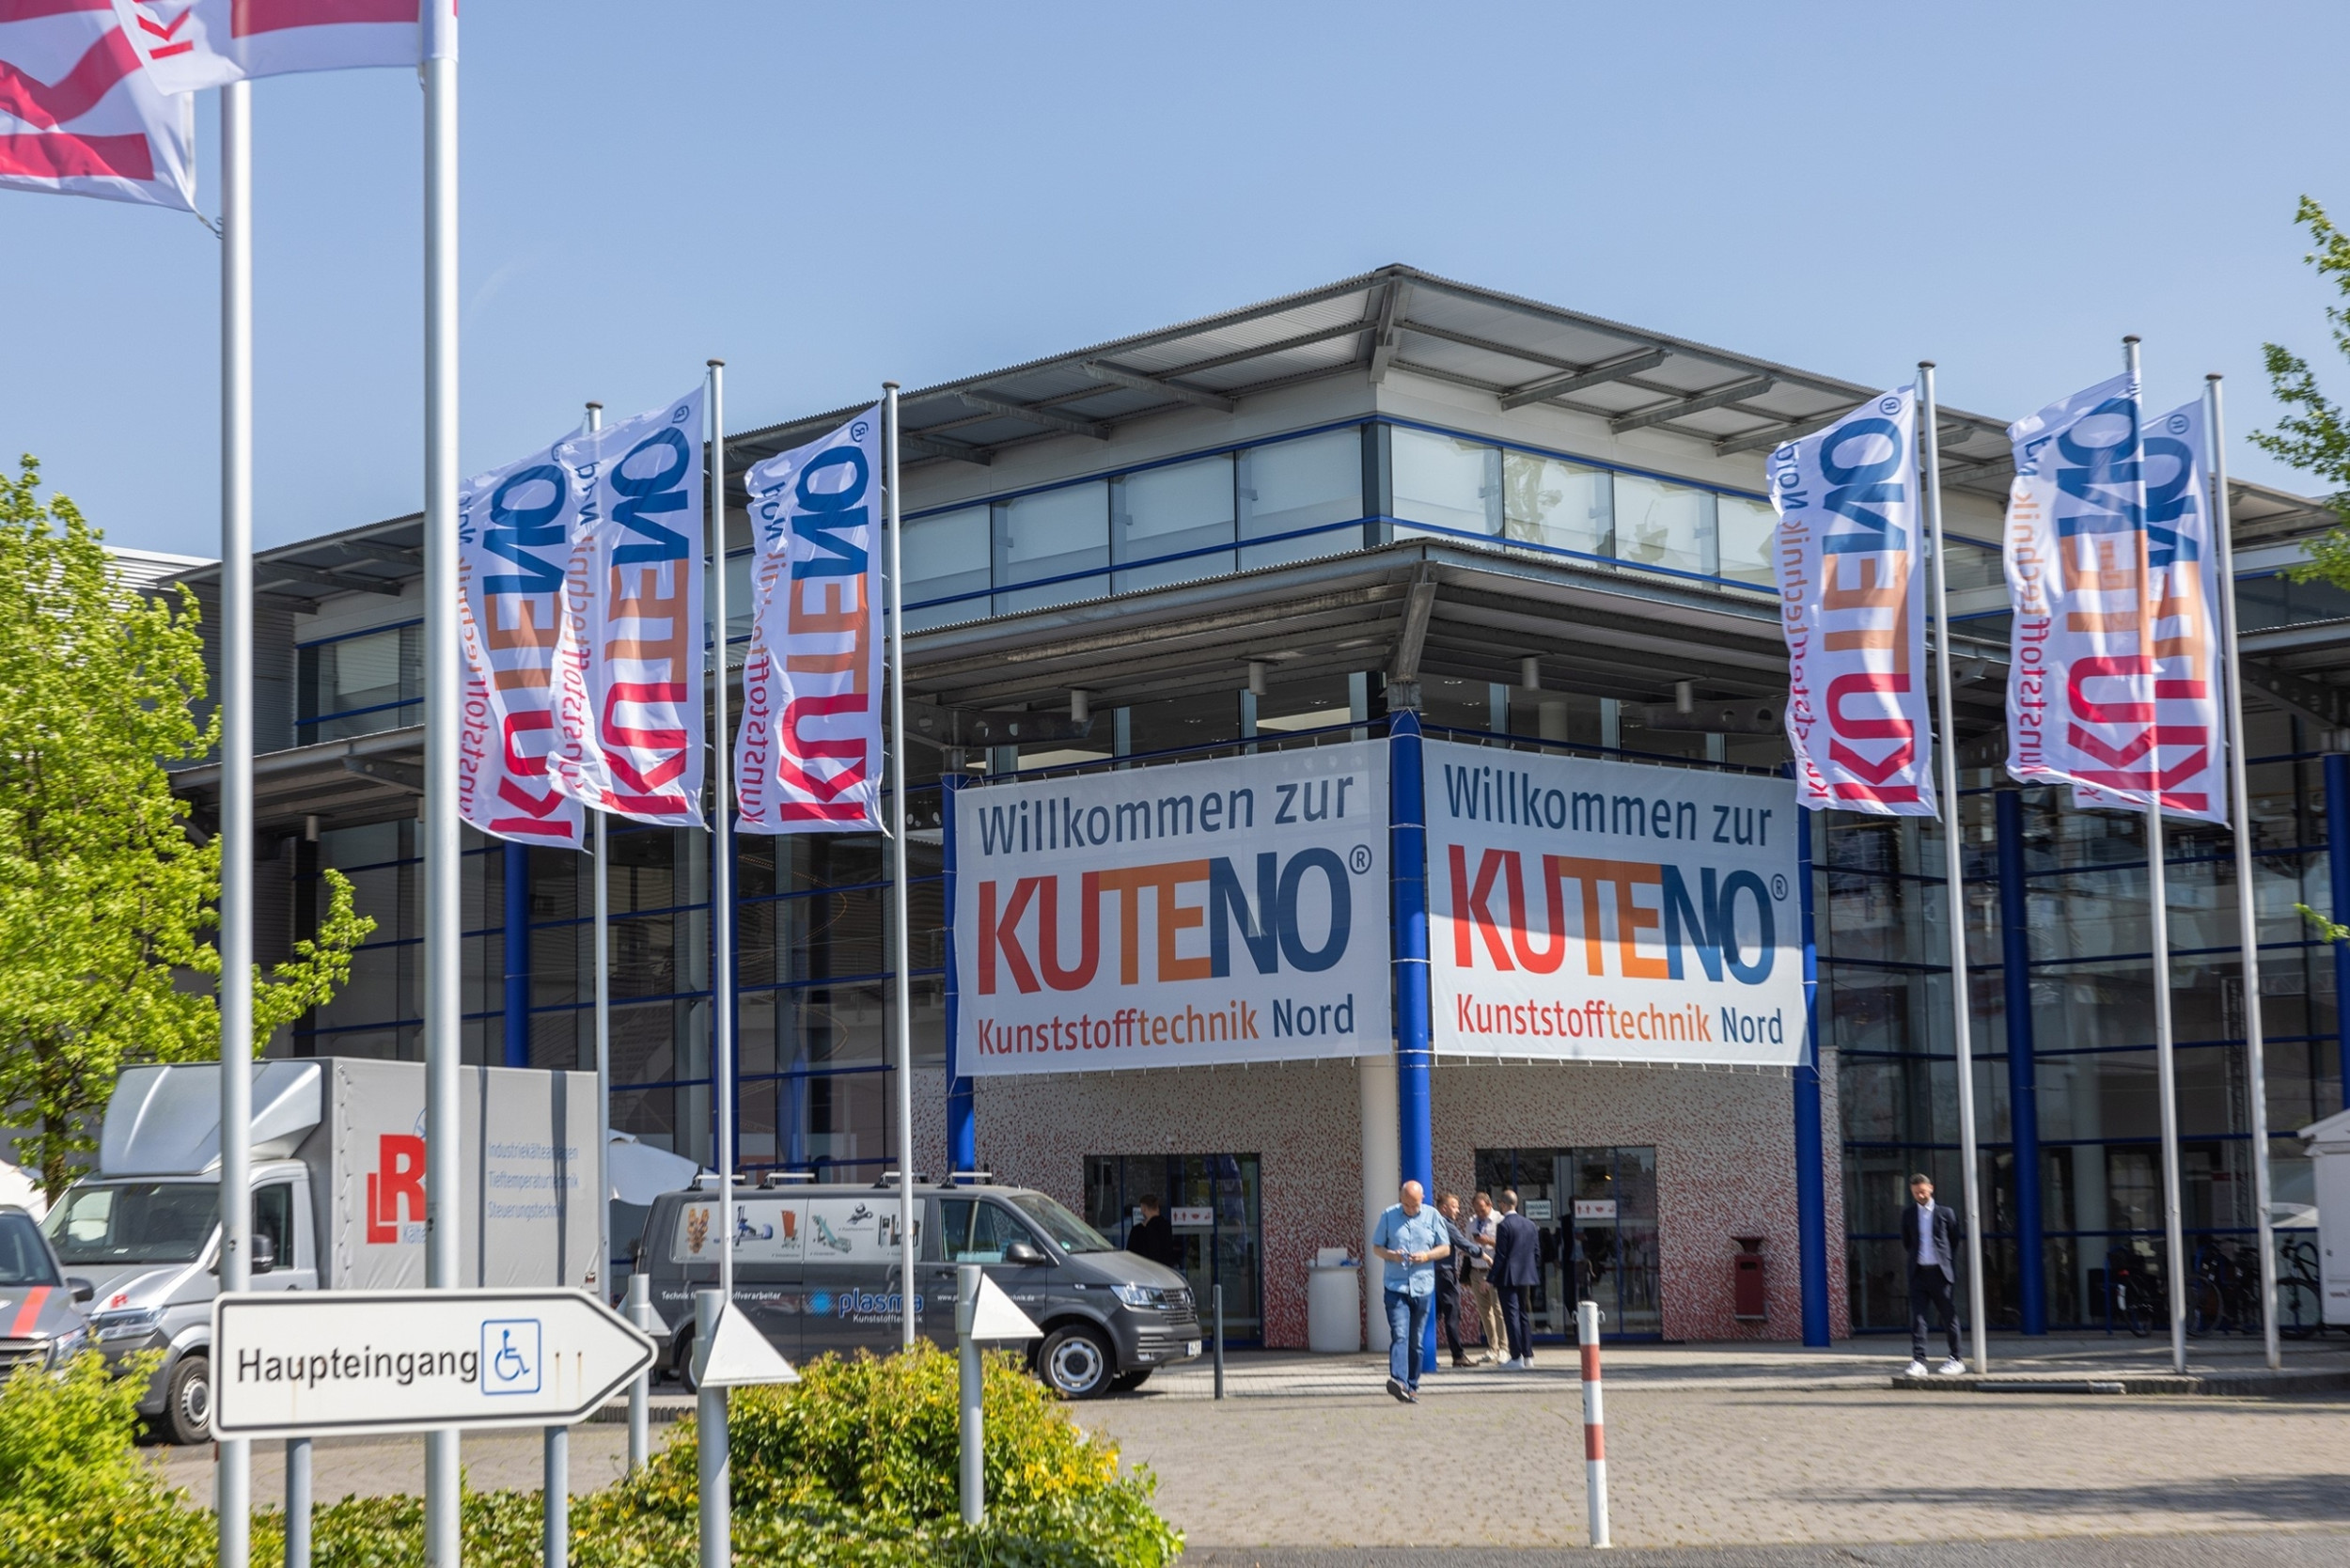 Die Kuteno – Kunststofftechnik Nord in Rheda-Wiedenbrück vom 9. bis 11. Mai 2023 ist laut Veranstalter Easyfairs das Highlight für die Kunststoffbranche in Norddeutschland.